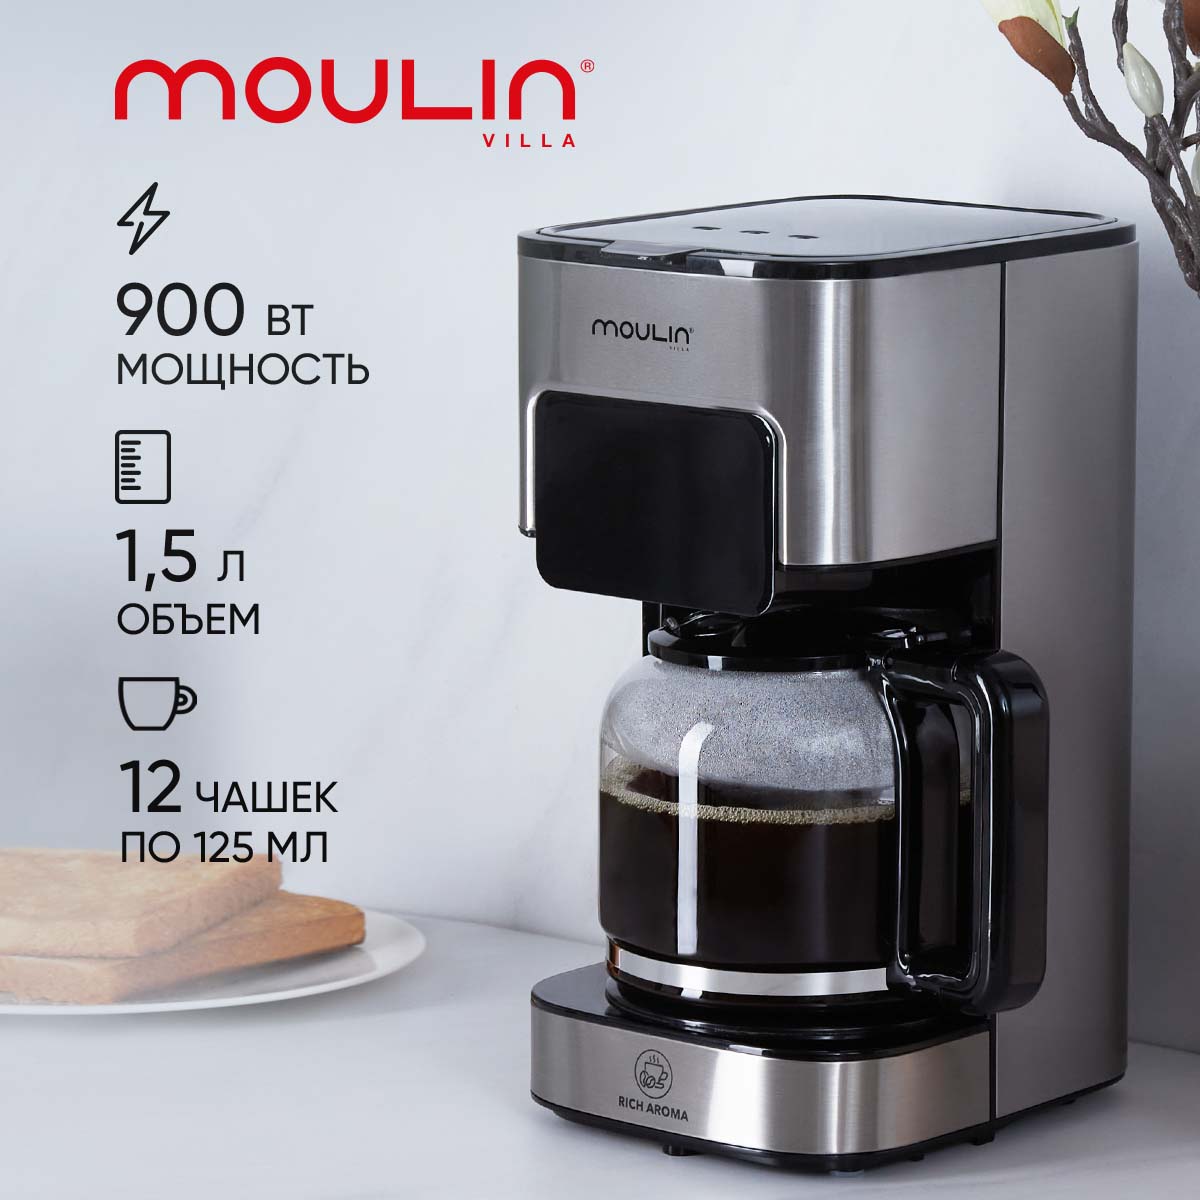 Кофеварка капельного типа Moulin Villa MV DCM-001 рожковая кофеварка moulin villa mv ecm 002 серебристая